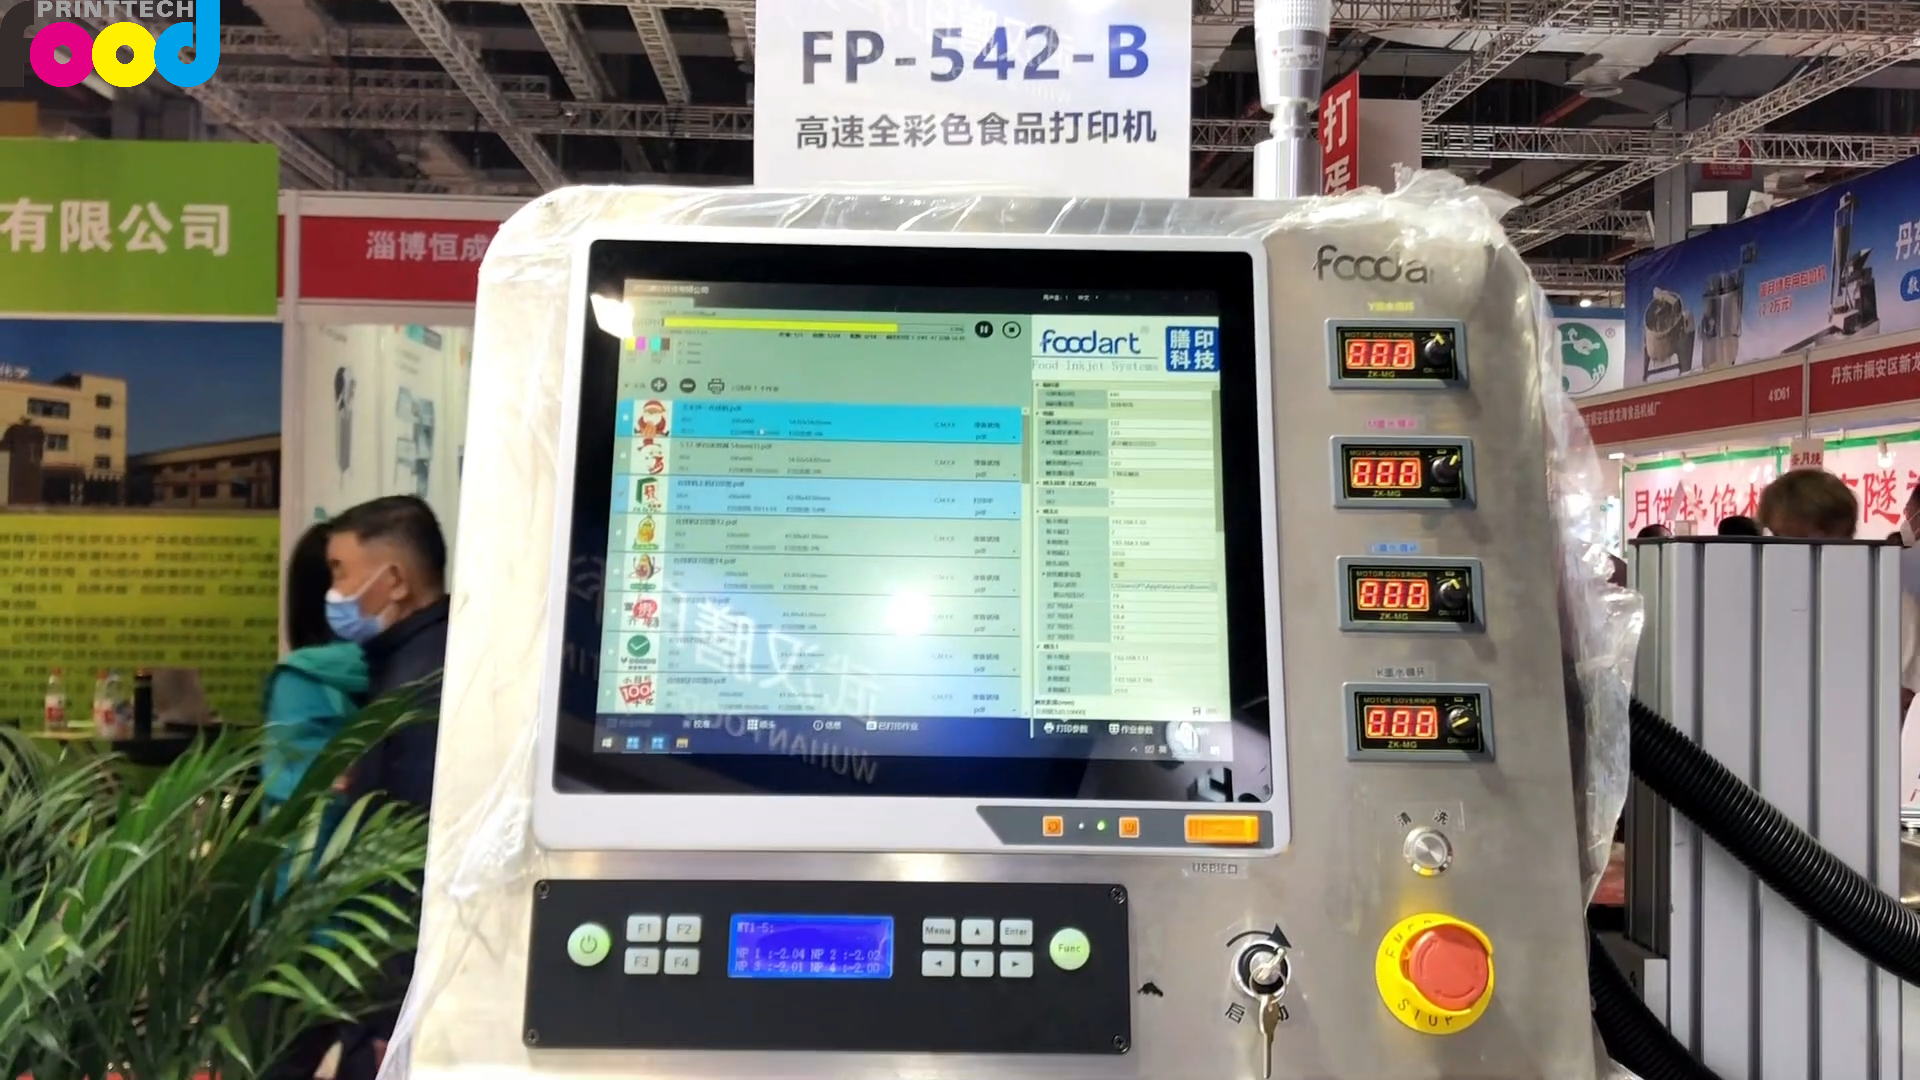 Impresora de alimentos de alta velocidad FP-542-B a todo color